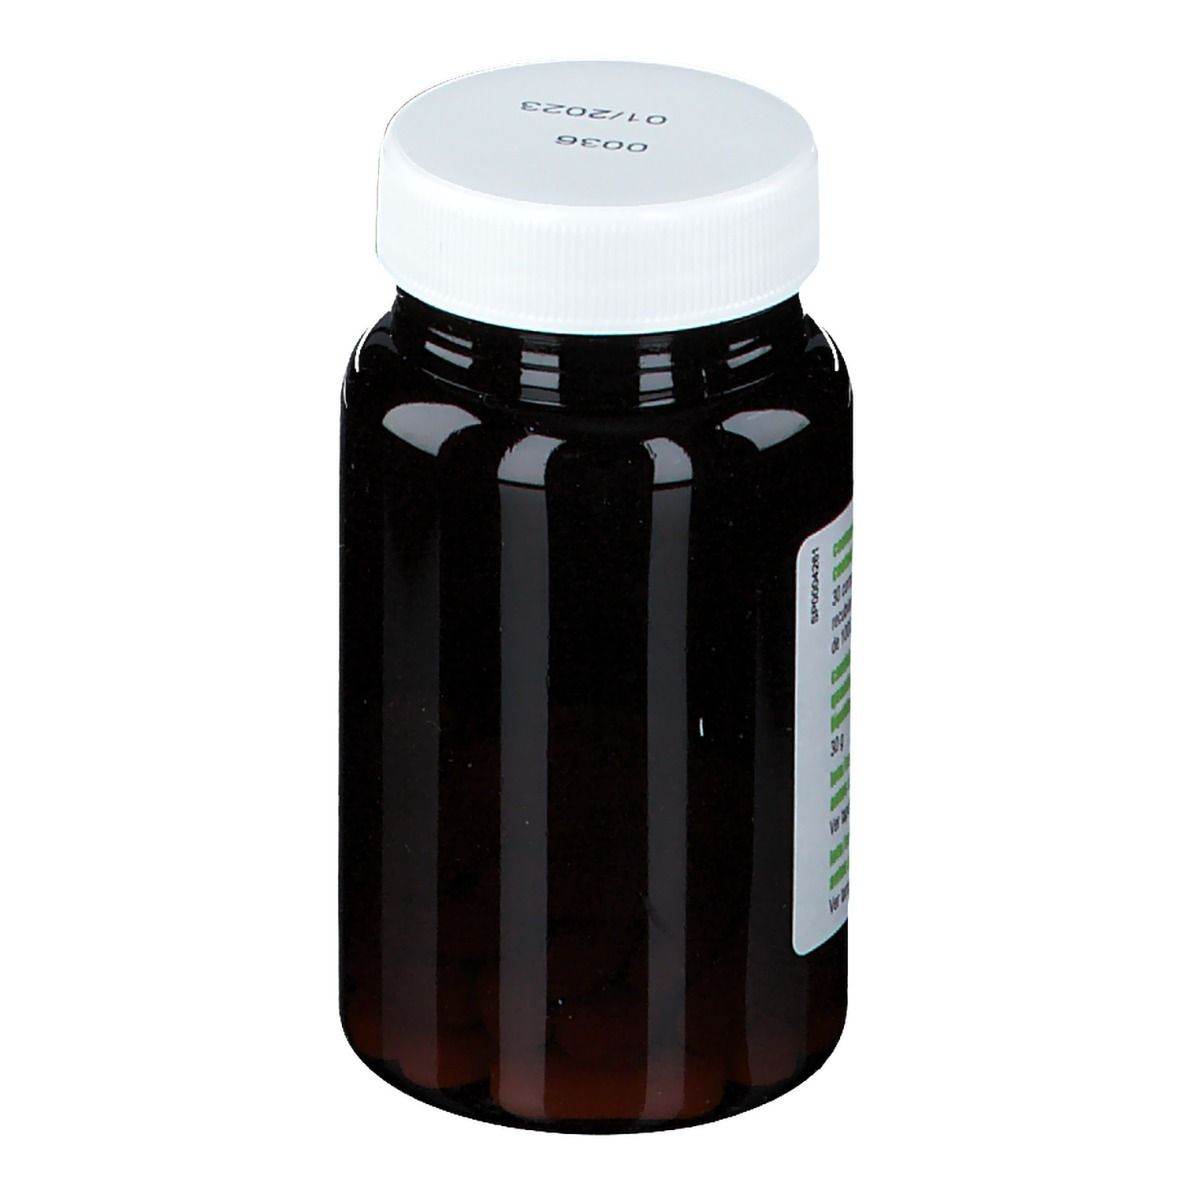 SoriaNatural® VIT&MIN 34 Multifeed